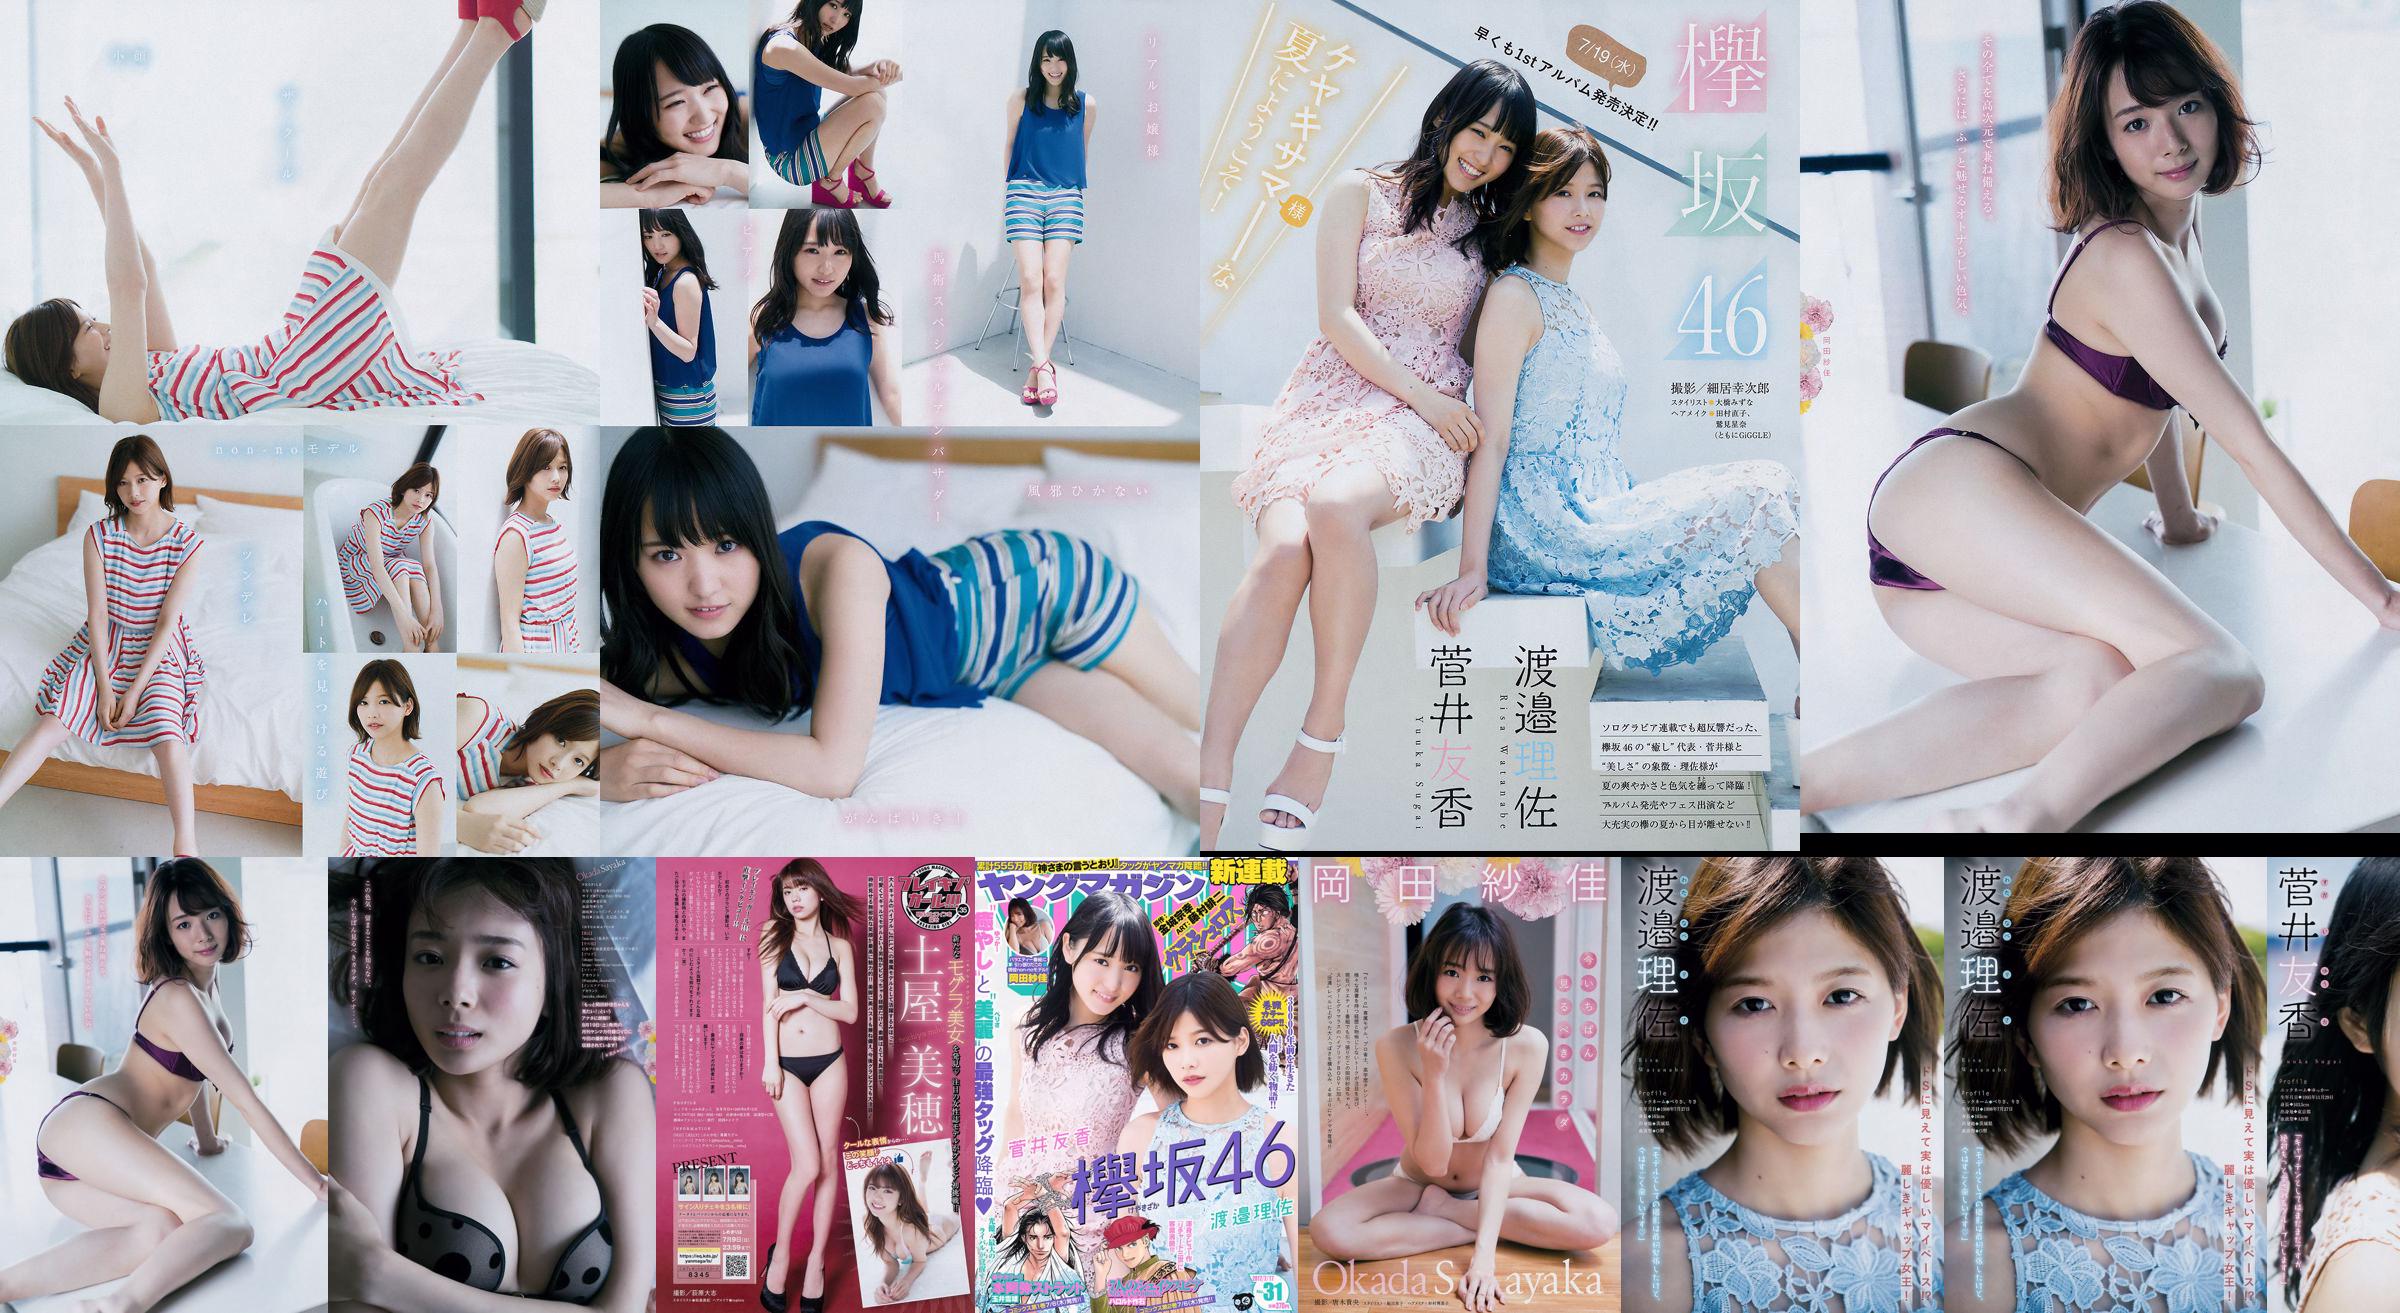 [Young Magazine] Watanabe Risa, Sugai Yuka, Okada Saika 2017 No.31 Photo Magazine No.d74ed4 Page 2